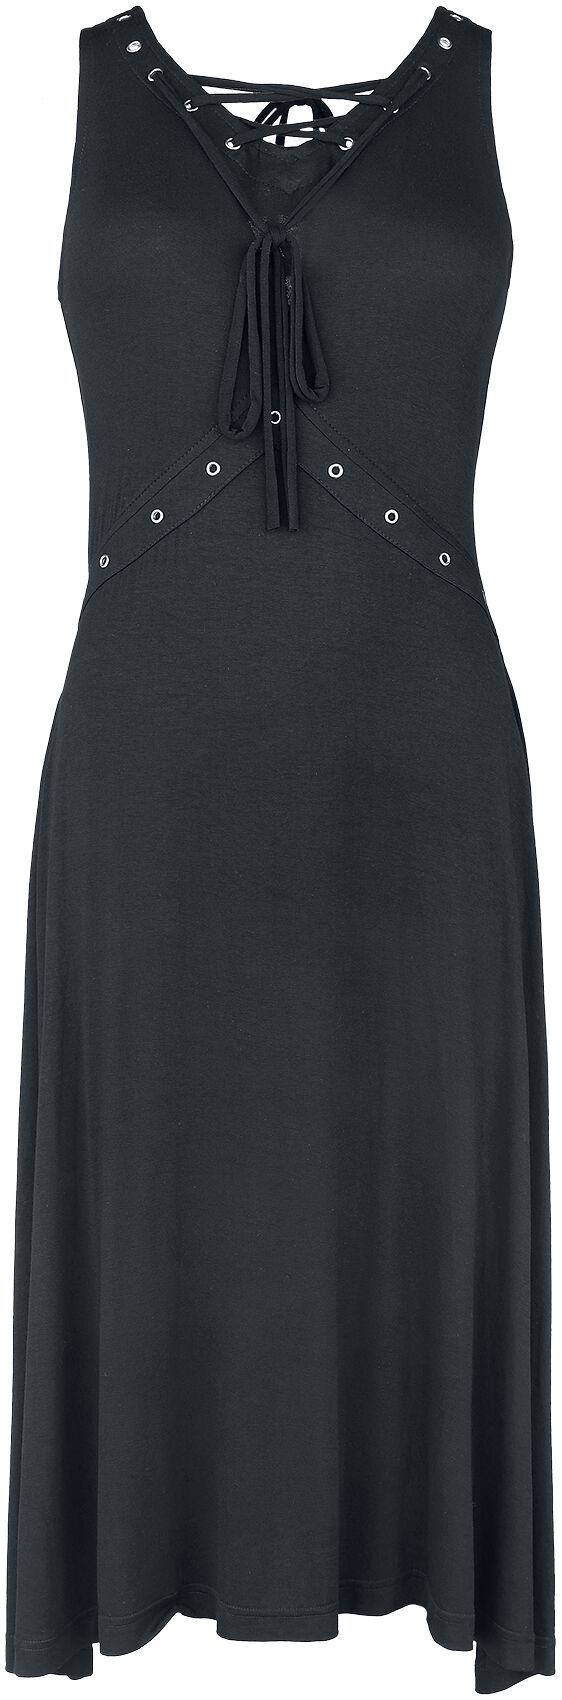 Gothicana by EMP - Gothic Kleid knielang - Kleid mit Schnürung - S bis XXL - für Damen - Größe XXL - schwarz